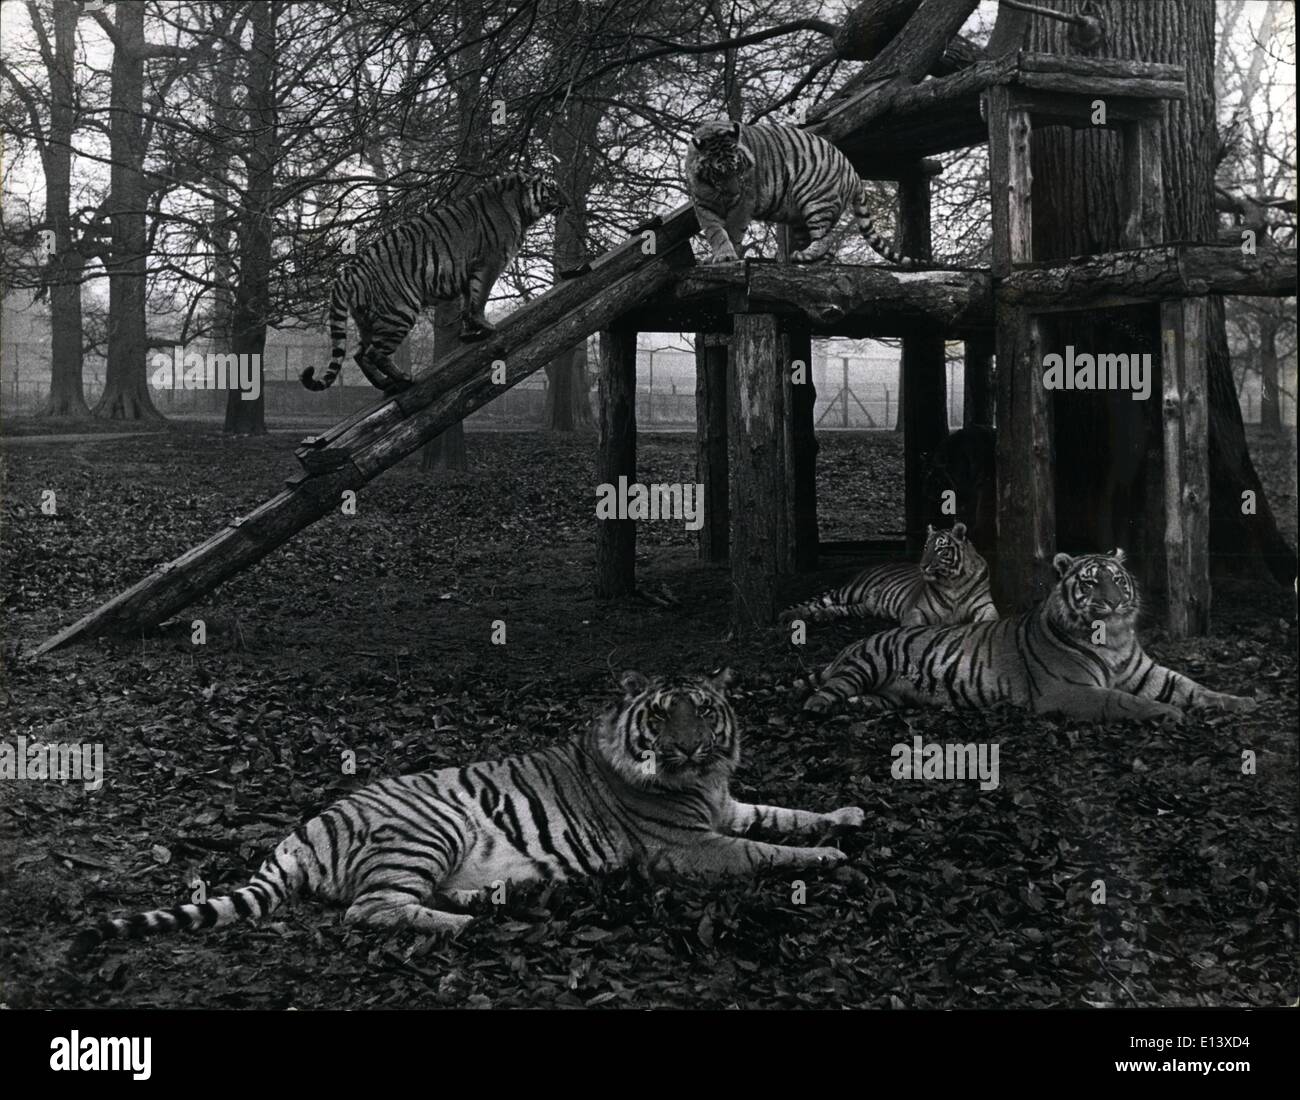 Marzo 27, 2012 - como en casa: estos gatos grandes desde las selvas de Bengala son vistos como hacen lo mejor que pueden hacer los Tigres en Woburn Park se asemejan más a casa. Foto de stock